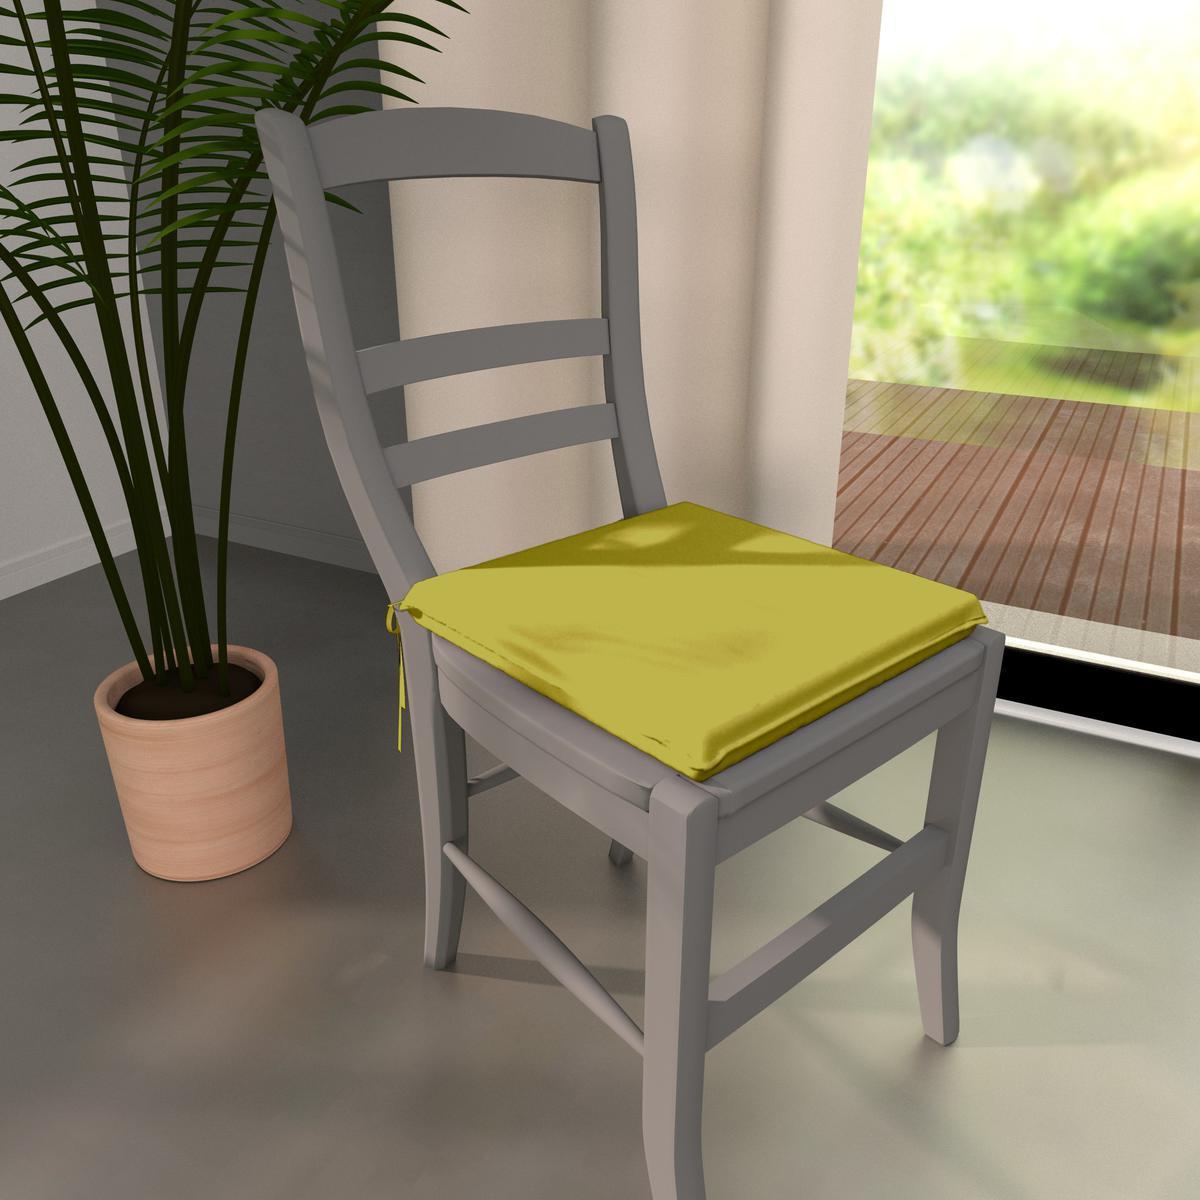 Galette de chaise - 100% coton - 36x38cm - Vert fenTRUEl